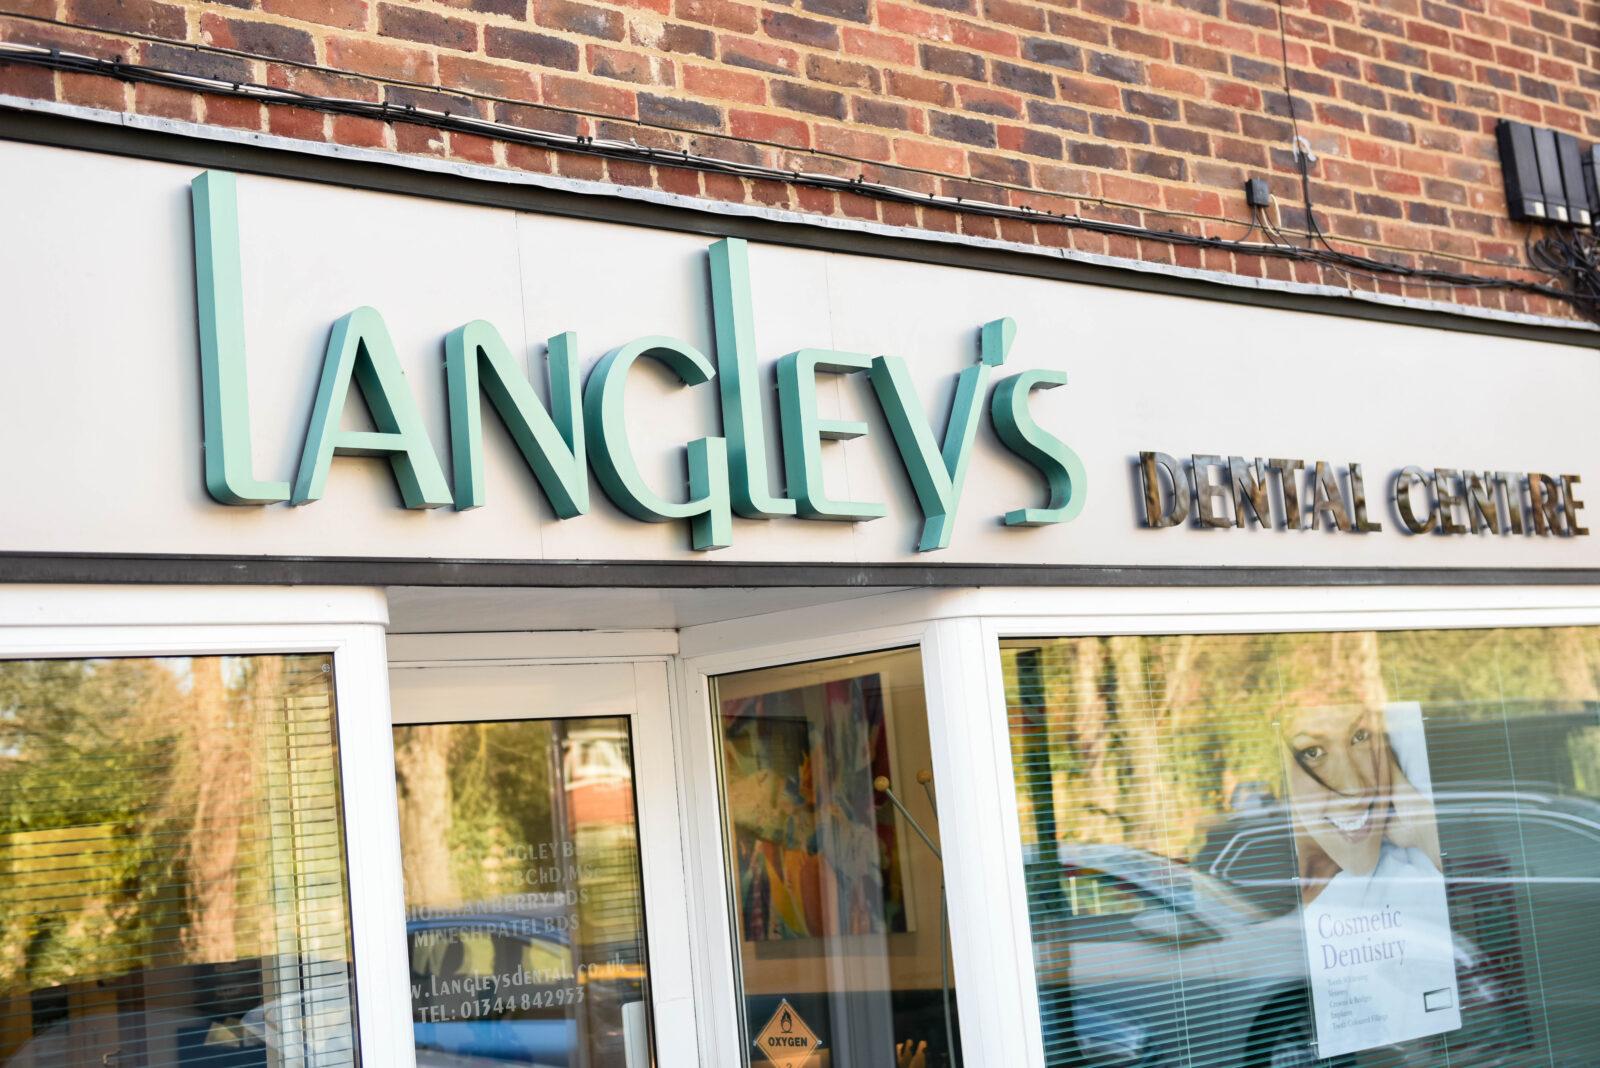 Langleys Dental signage